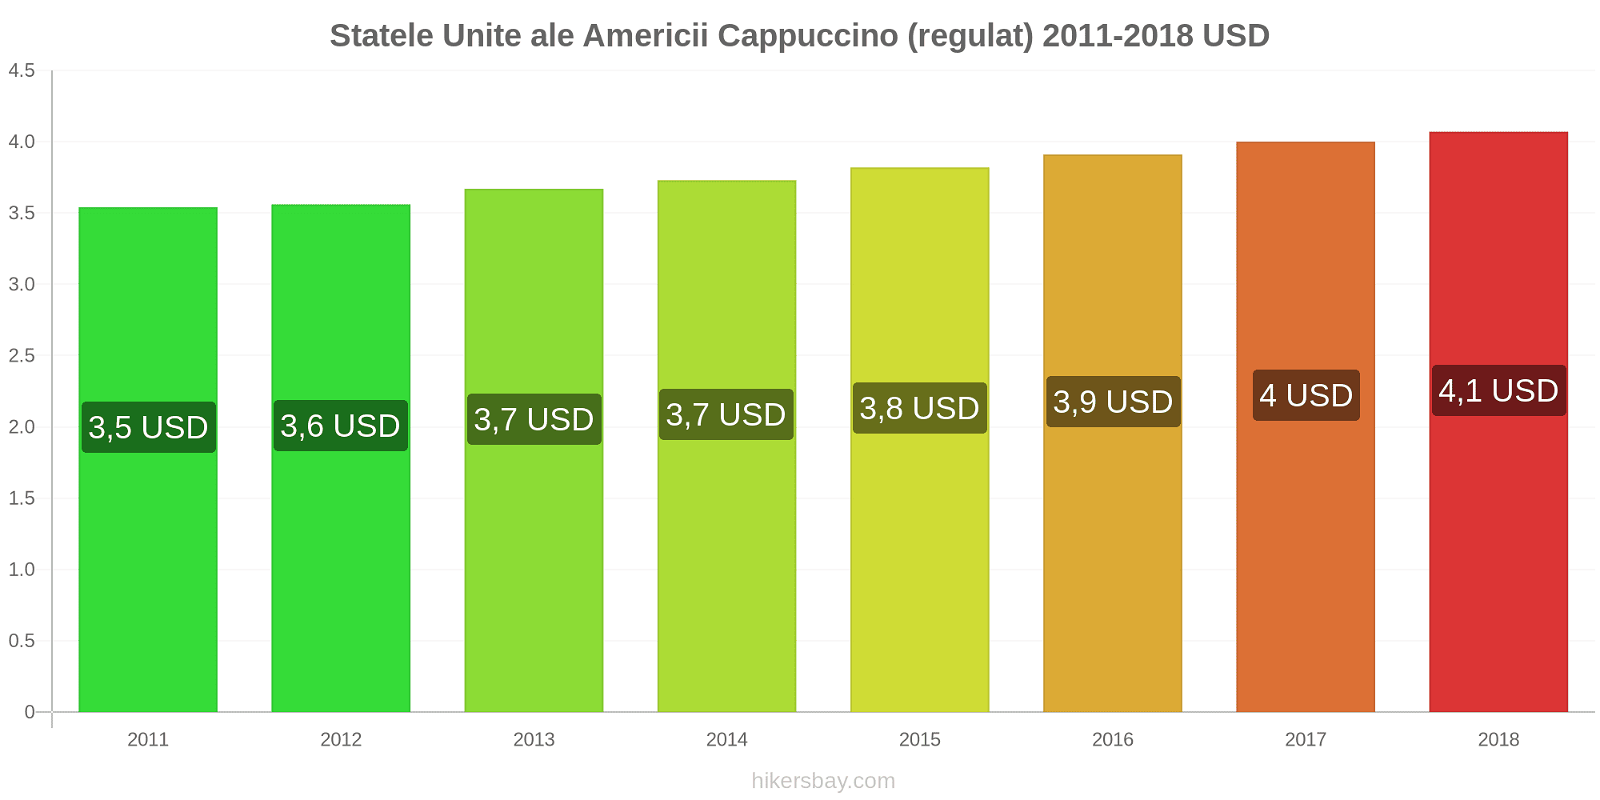 Statele Unite ale Americii schimbări de prețuri Cappuccino hikersbay.com